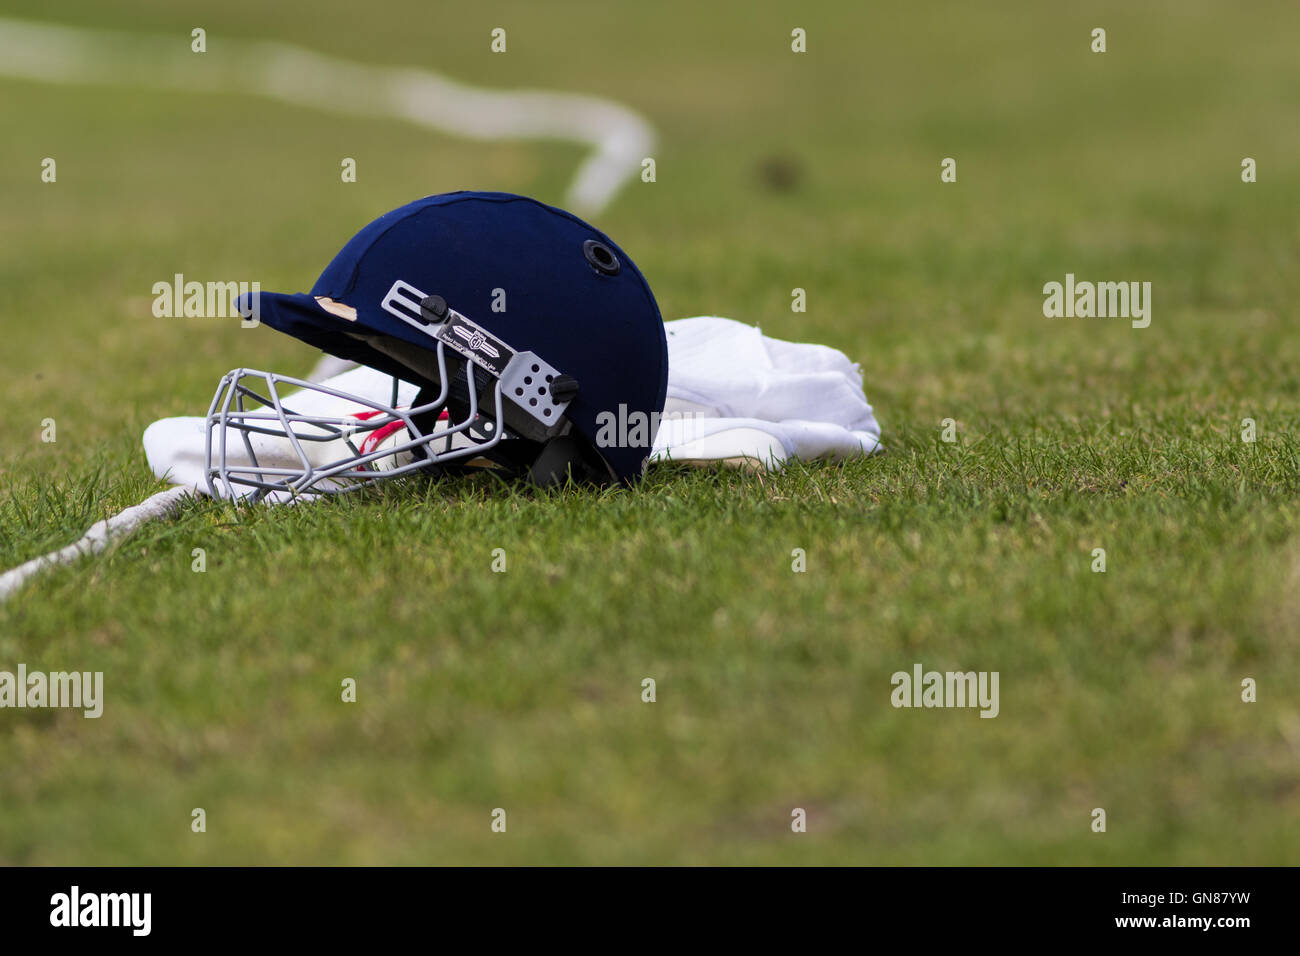 Cricket-Helm auf Cricket Pitch Begrenzung Seil Stockfoto